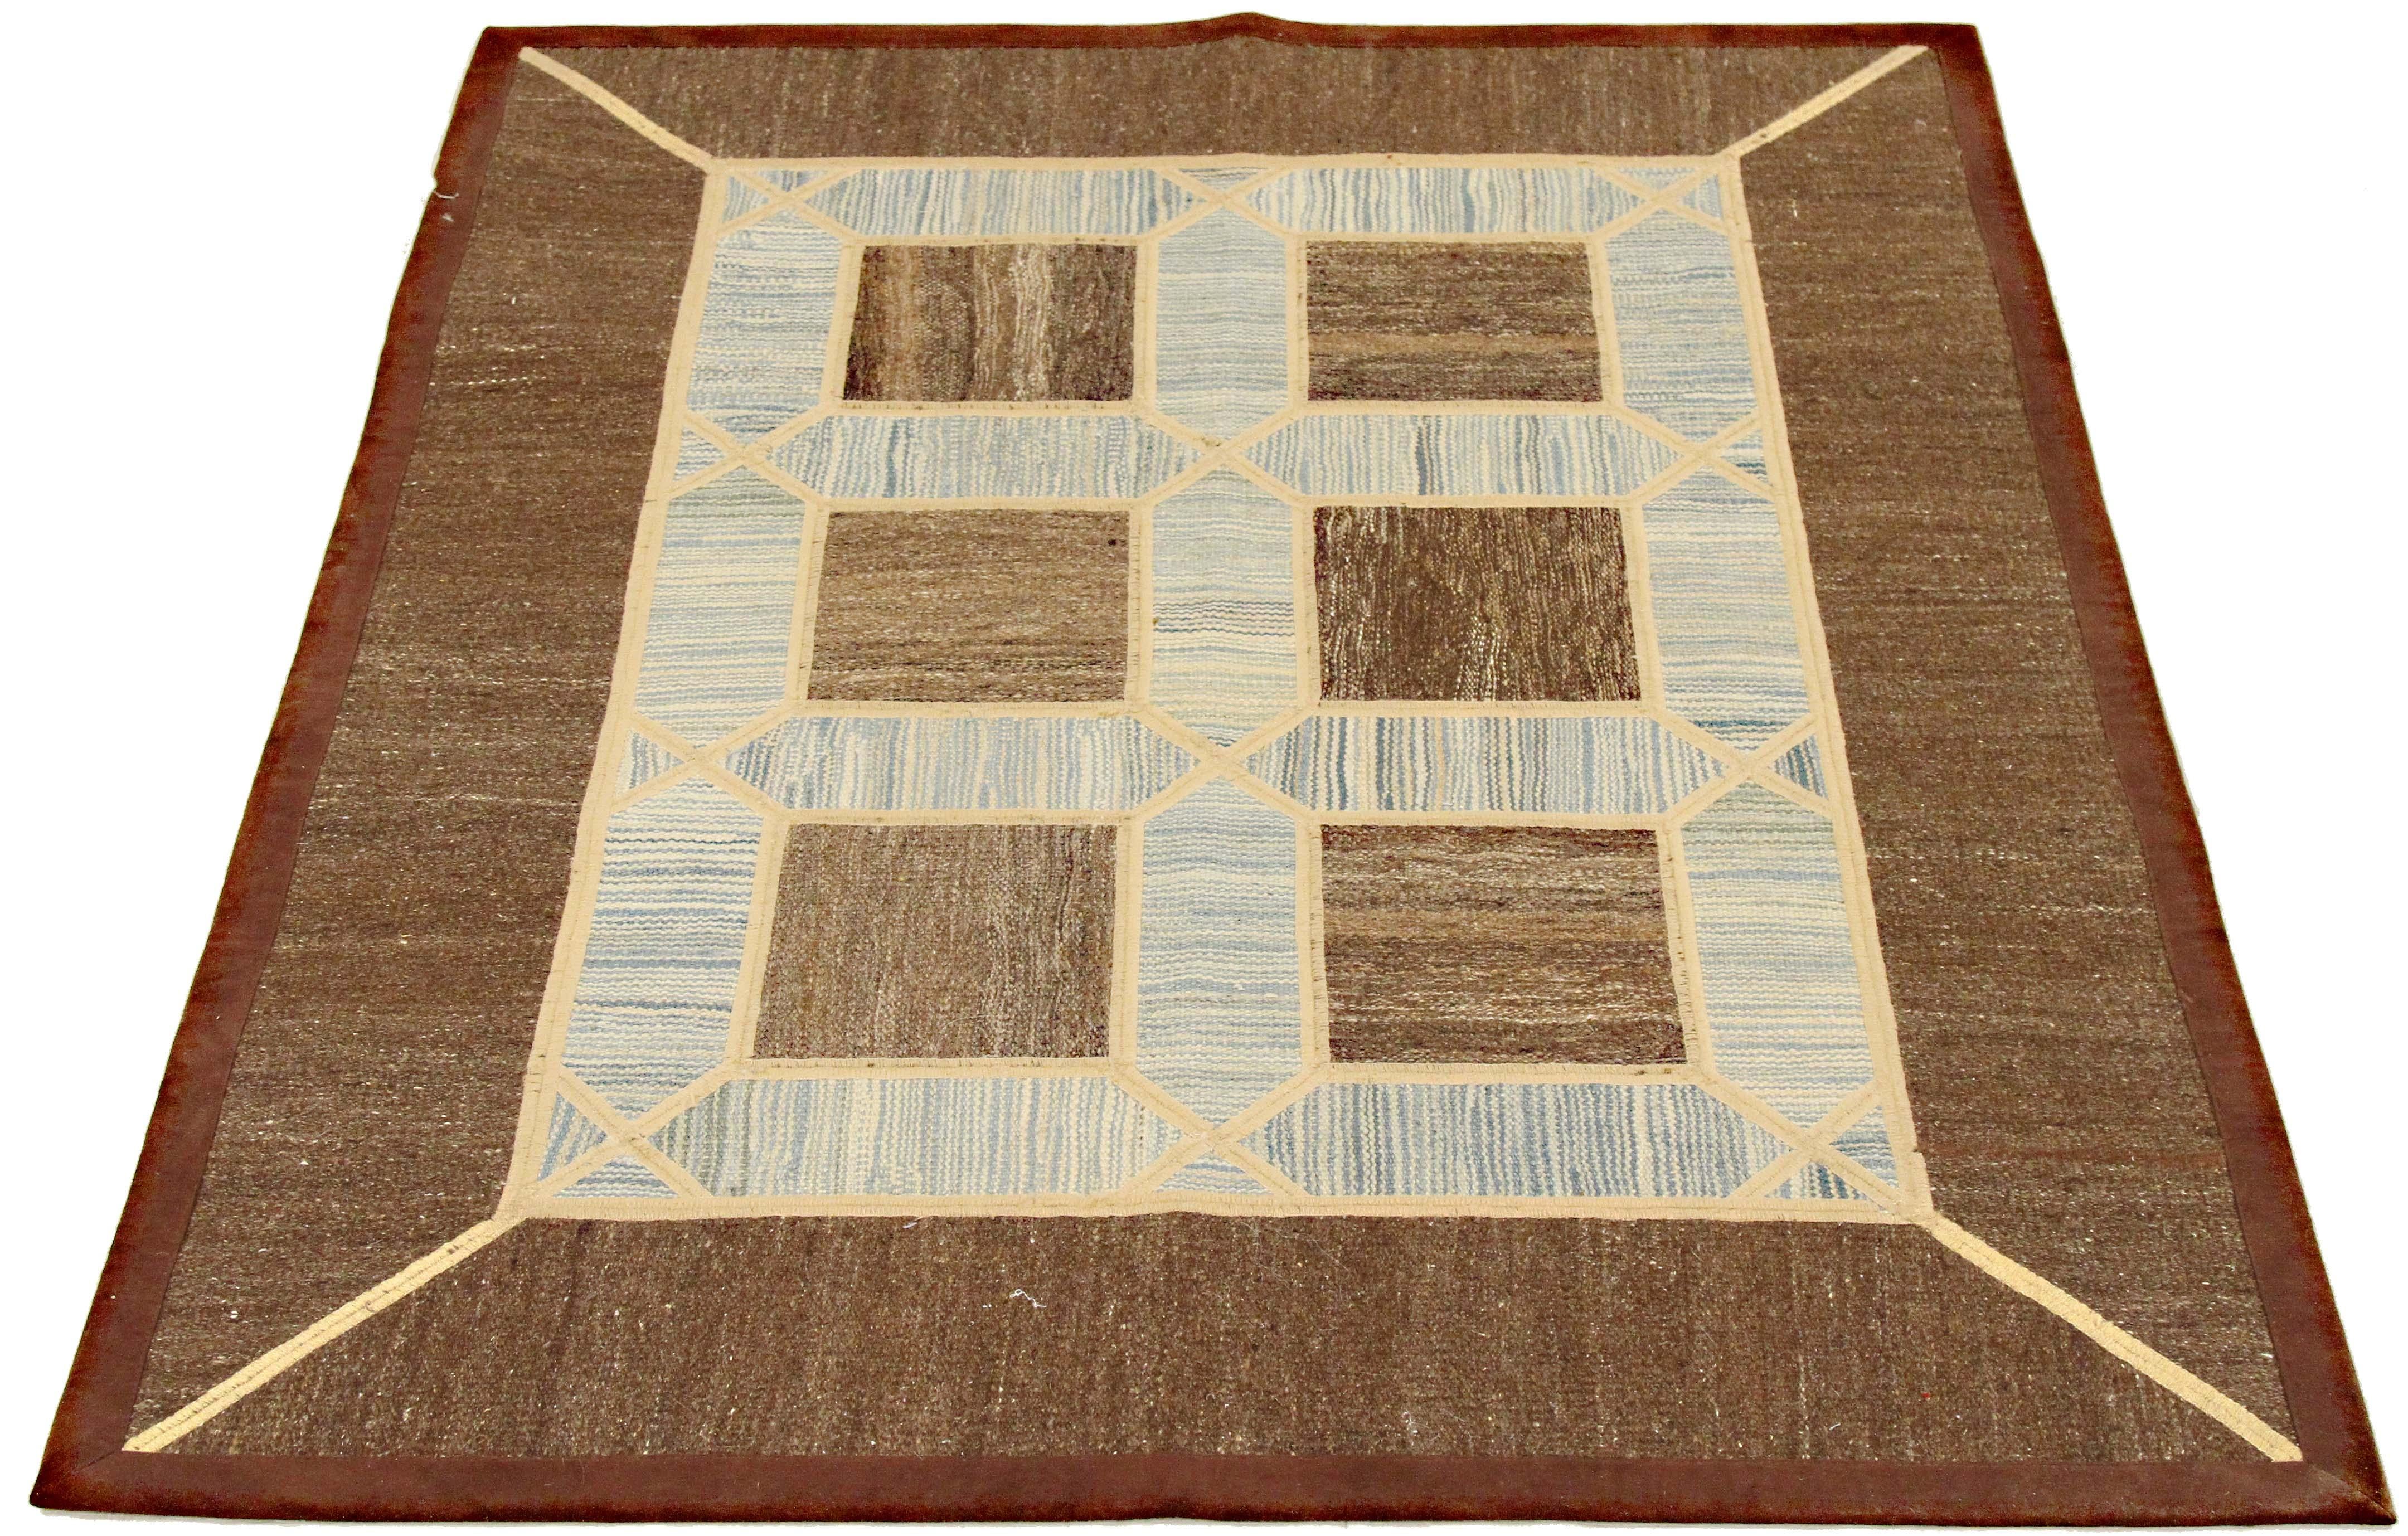 Moderner türkischer Teppich, handgewebt aus feinster Schafwolle und gefärbt mit natürlichen Pflanzenfarben, die für Menschen und Haustiere sicher sind. Es handelt sich um ein traditionelles Patch-Kilim-Flachgewebe mit eleganten geometrischen Mustern